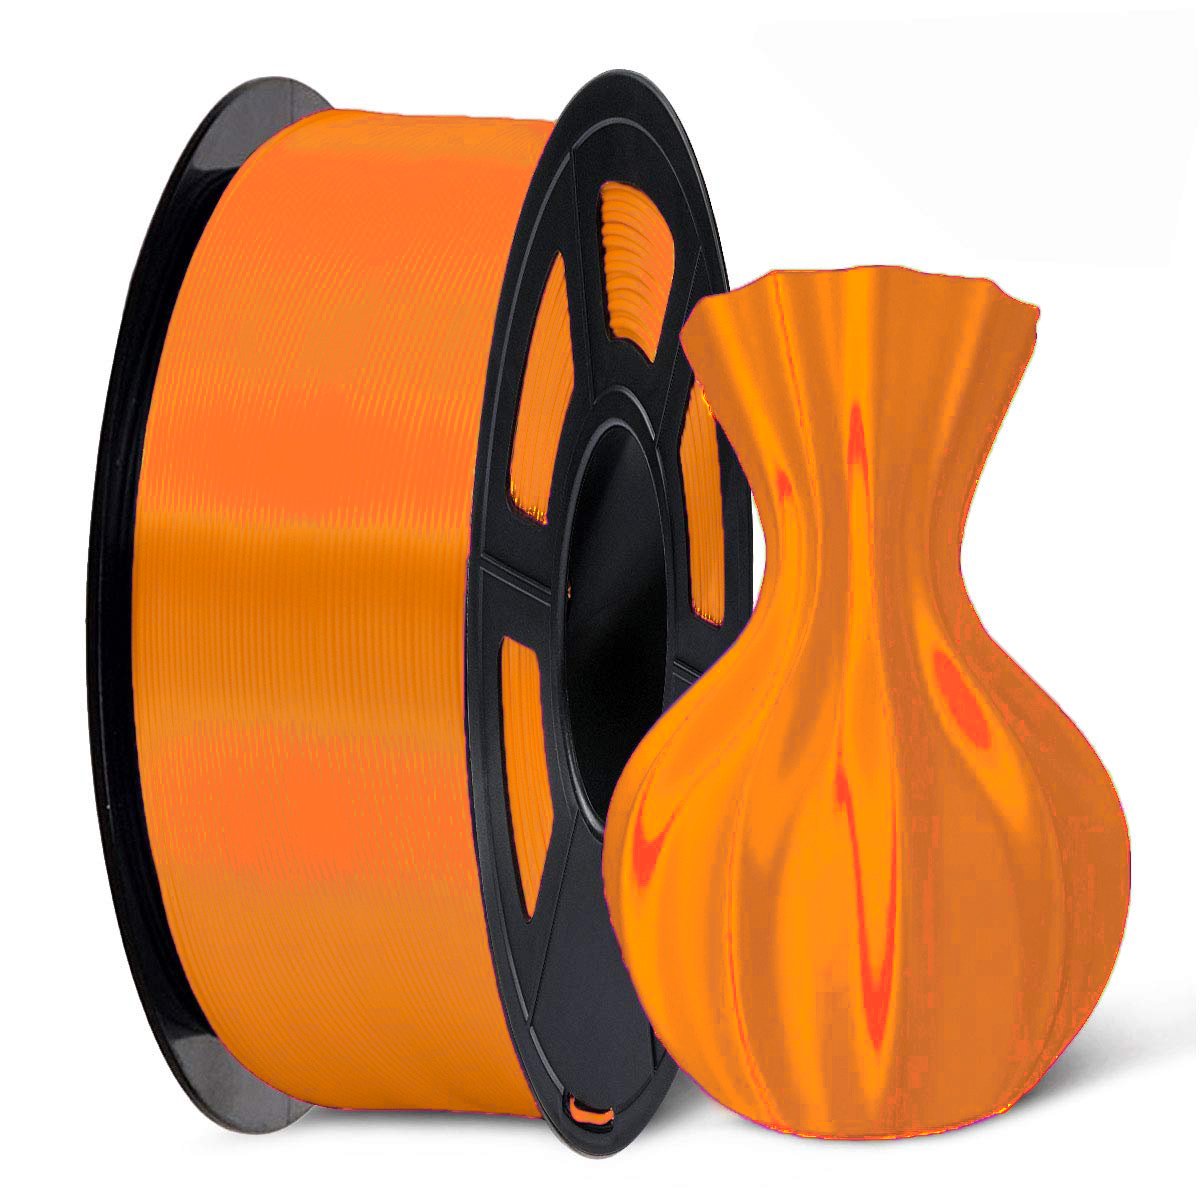 3D Printer Filaments buy online  3D Printer Filaments Suppliers